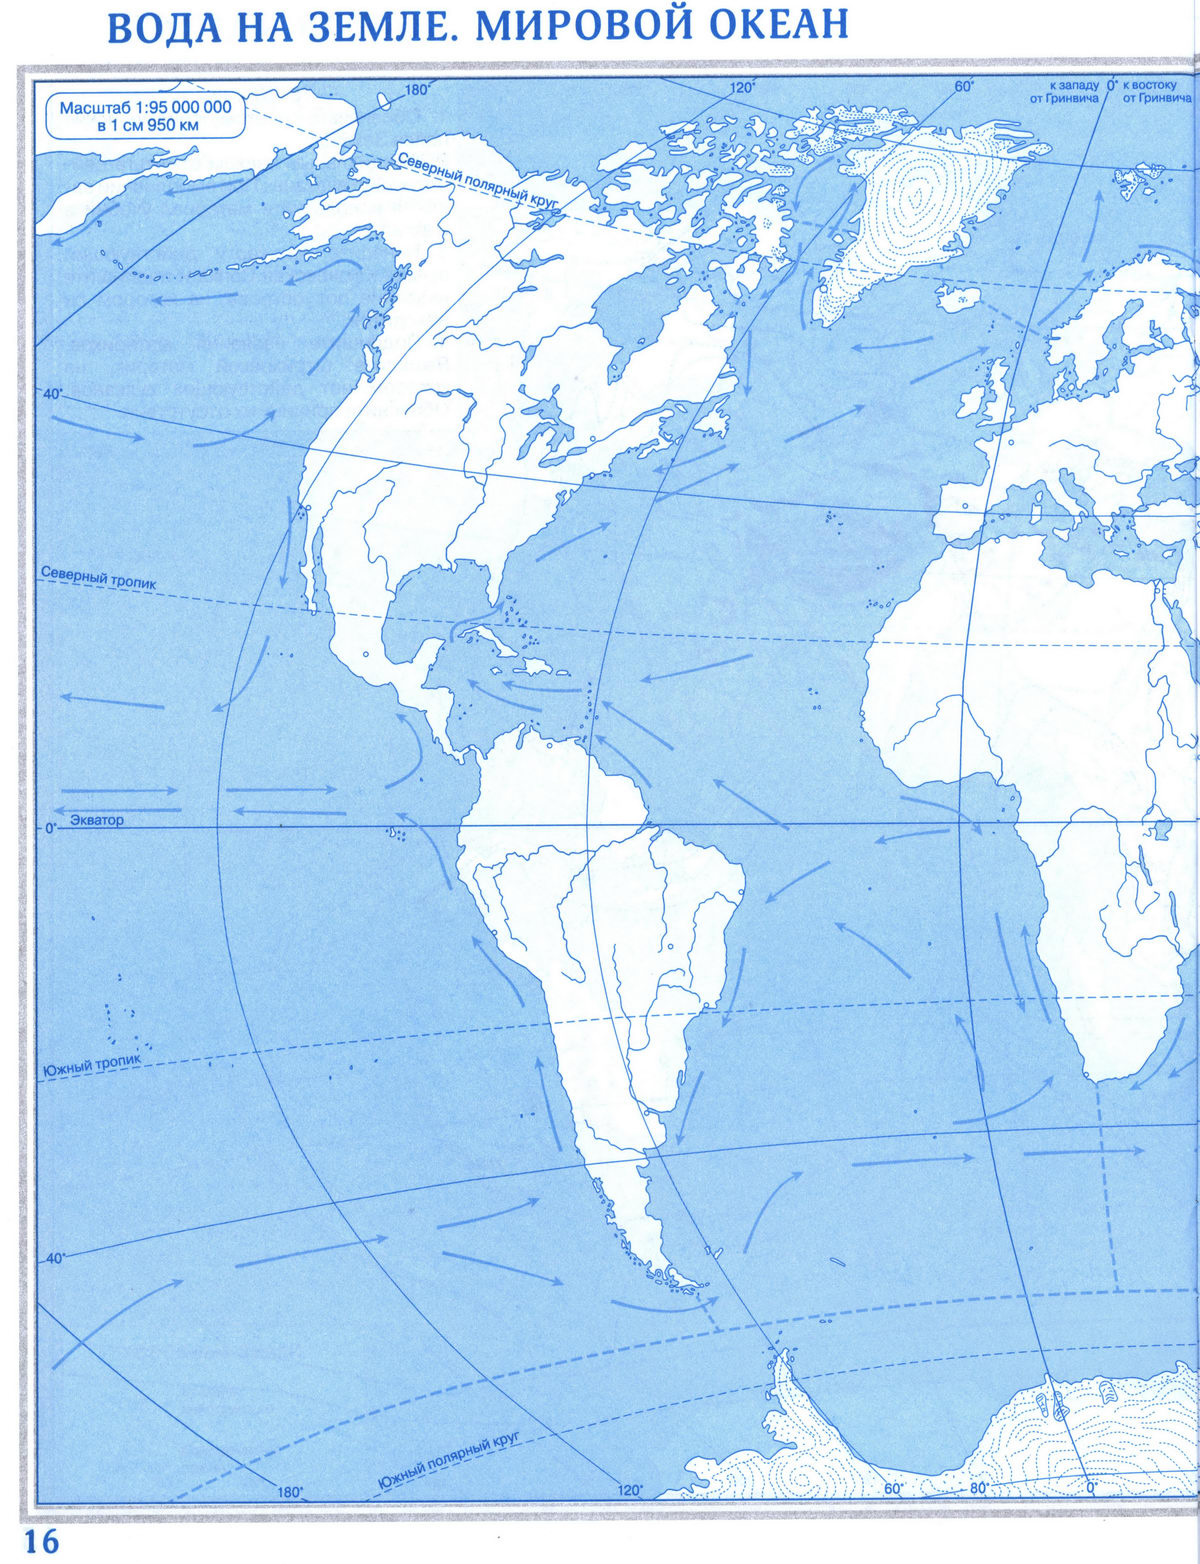 Контурная карта для печати - Вода на Земле, Мировой океан. Географии 5класс Дрофа, скачать и распечатать - Решебник